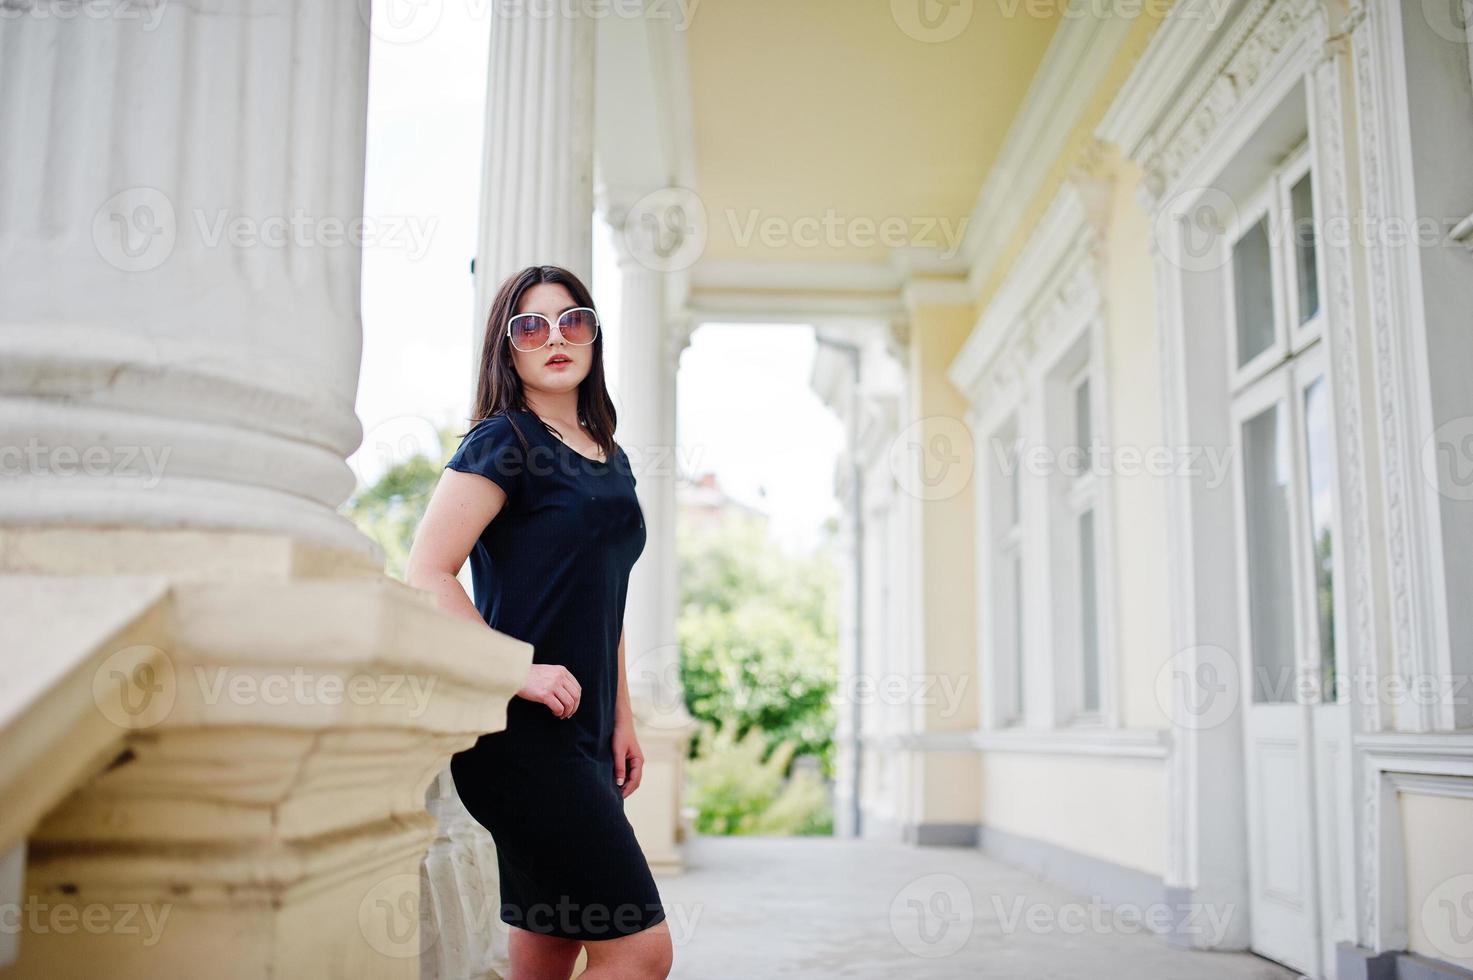 brunette meisje op zwarte jurk, zonnebril poseerde tegen oude vintage huis, op straat van de stad. foto